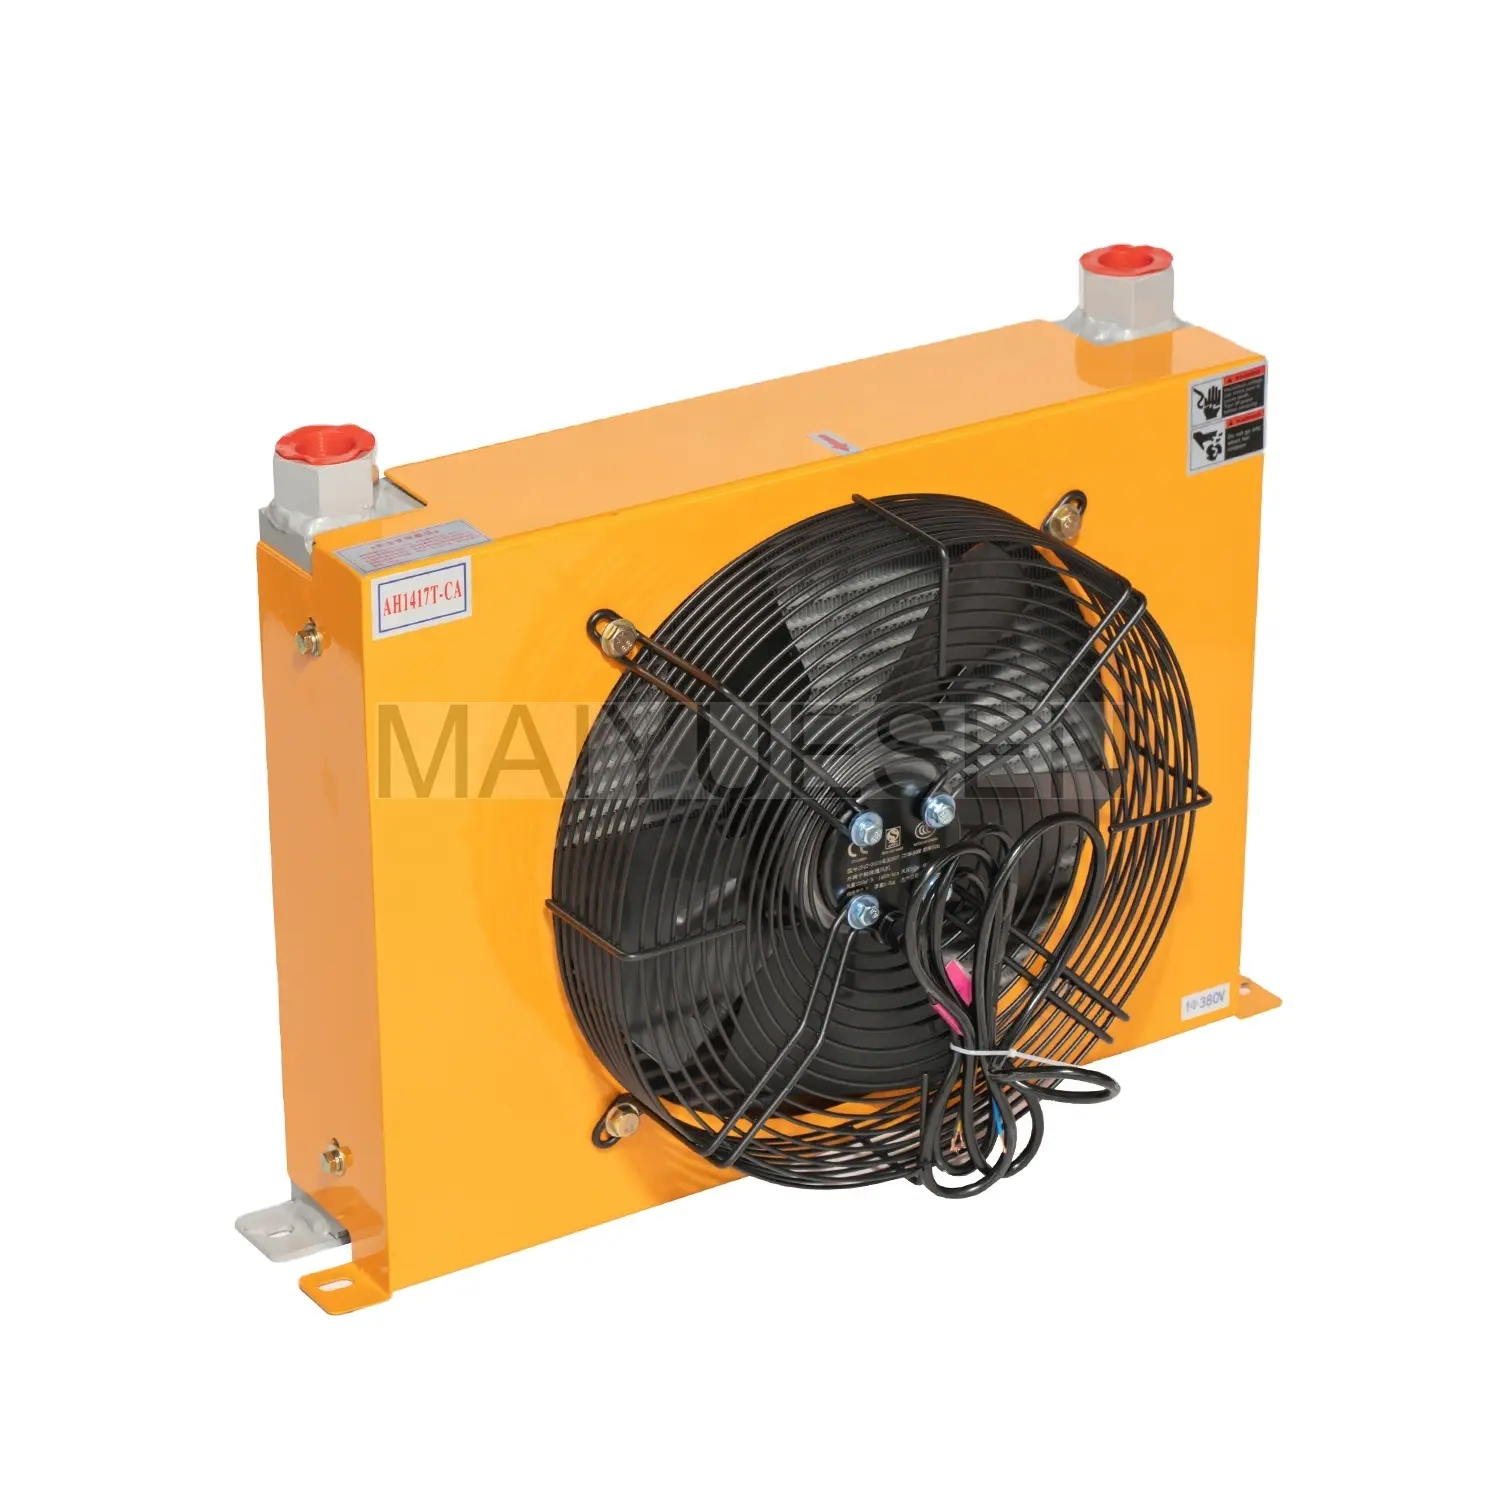 Fabriqué en Chine HM AH1417T refroidisseur d'huile de type ventilateur hydraulique Convient pour une utilisation dans les industries de l'automobile et des machines